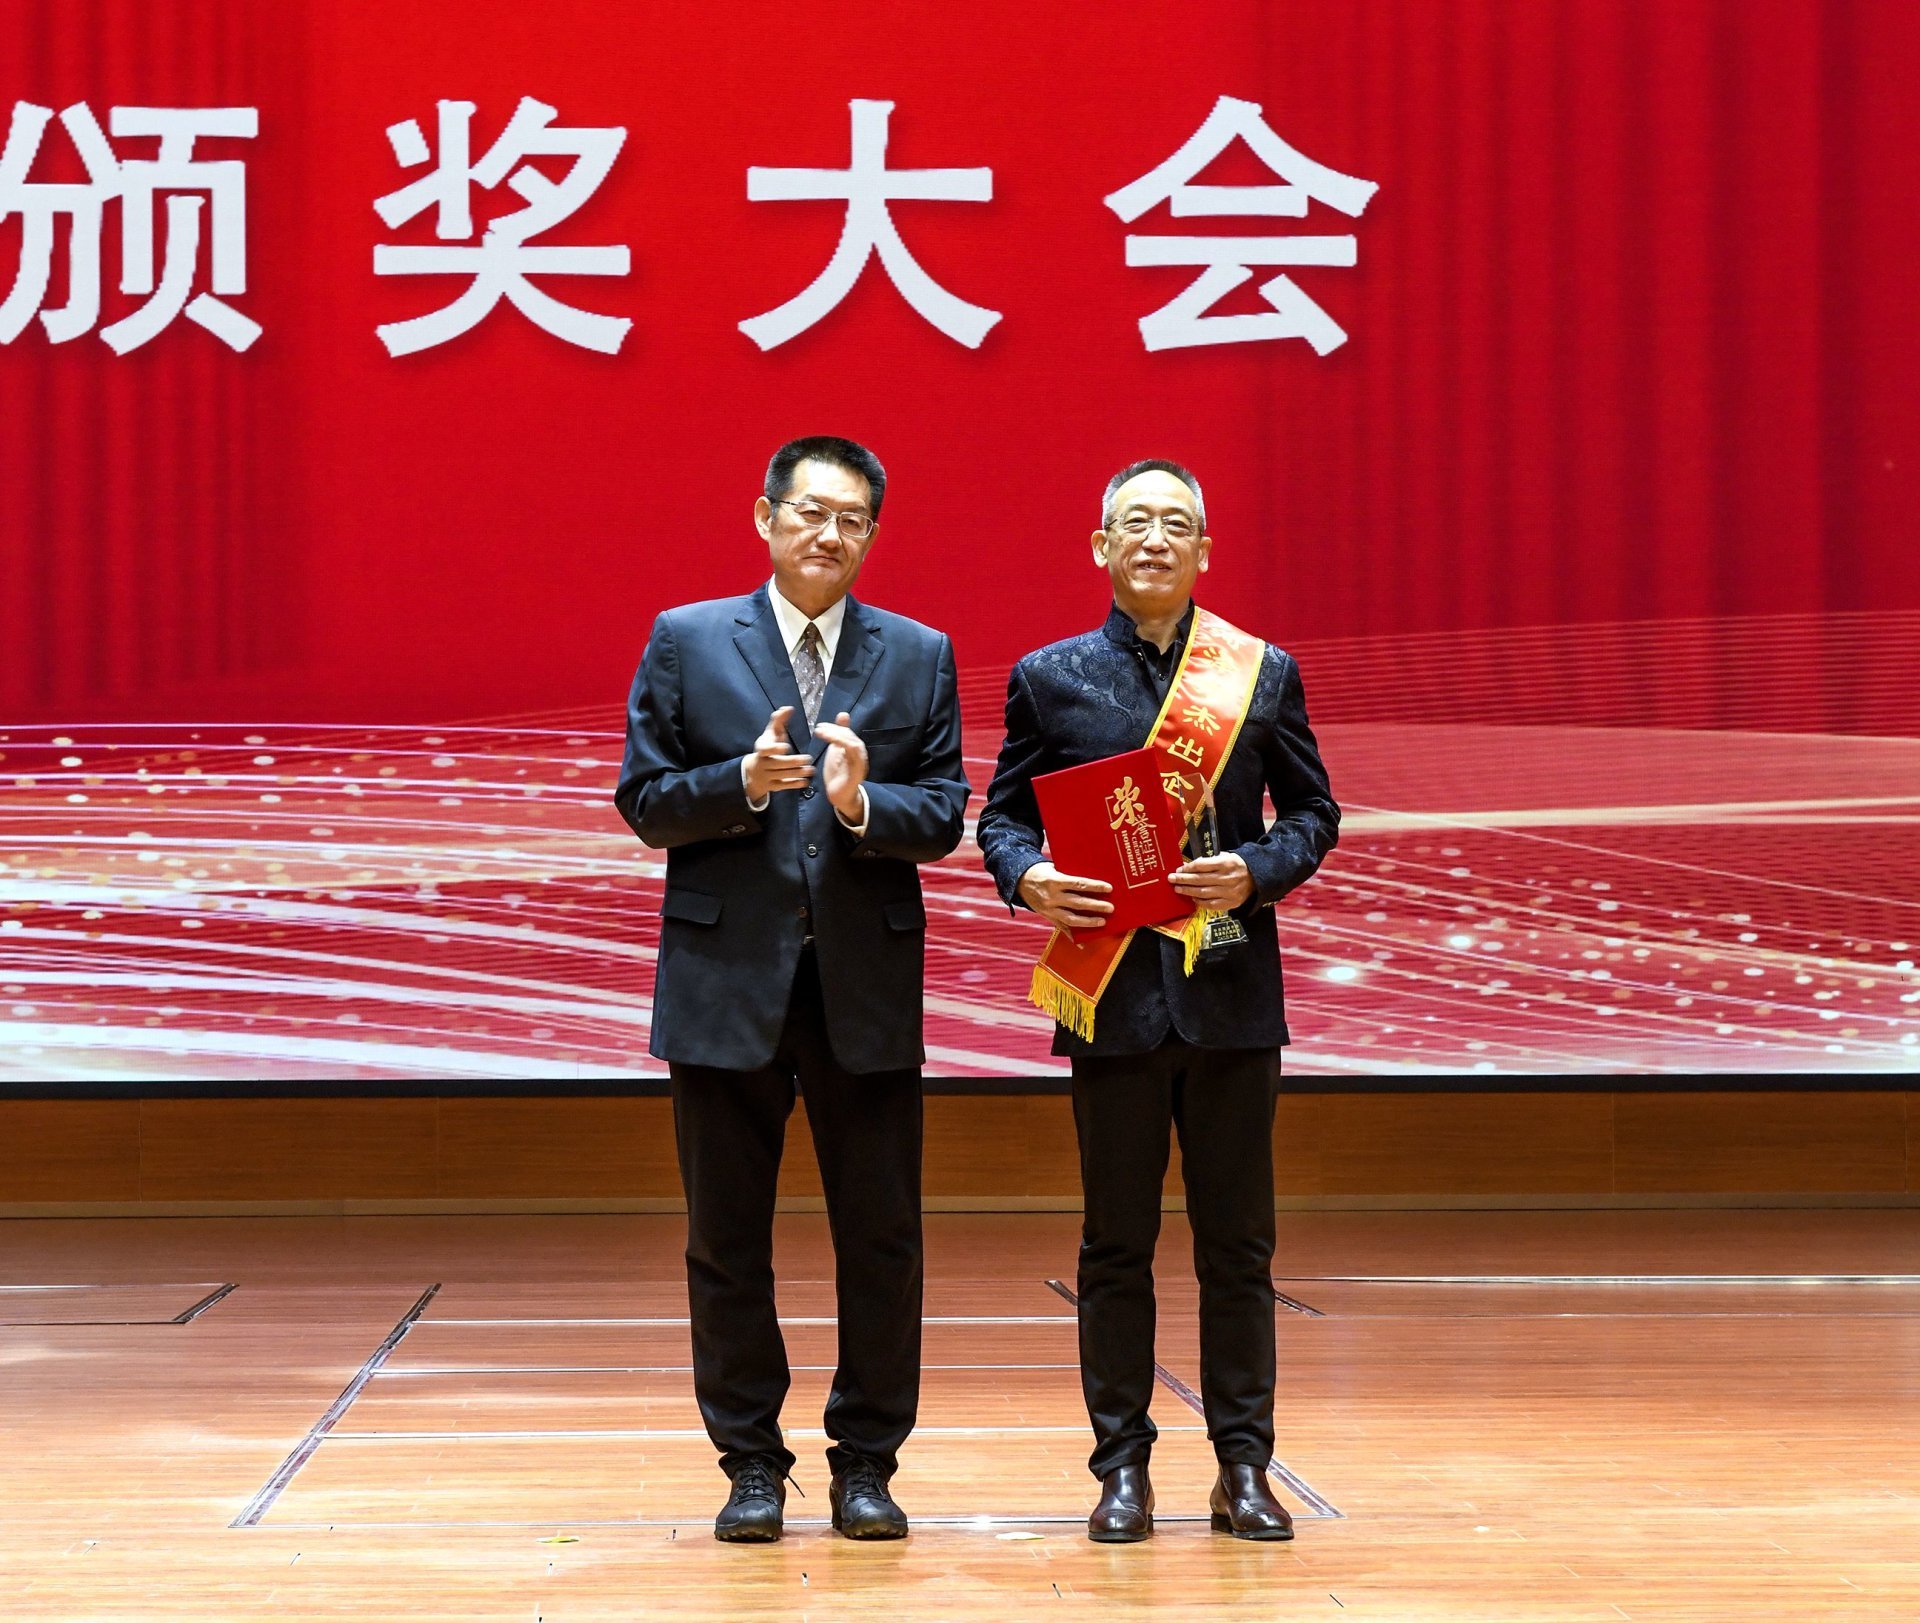 熱烈祝賀彭總被授予“菏澤市杰出企業家”榮譽稱號，并記個人二等功！